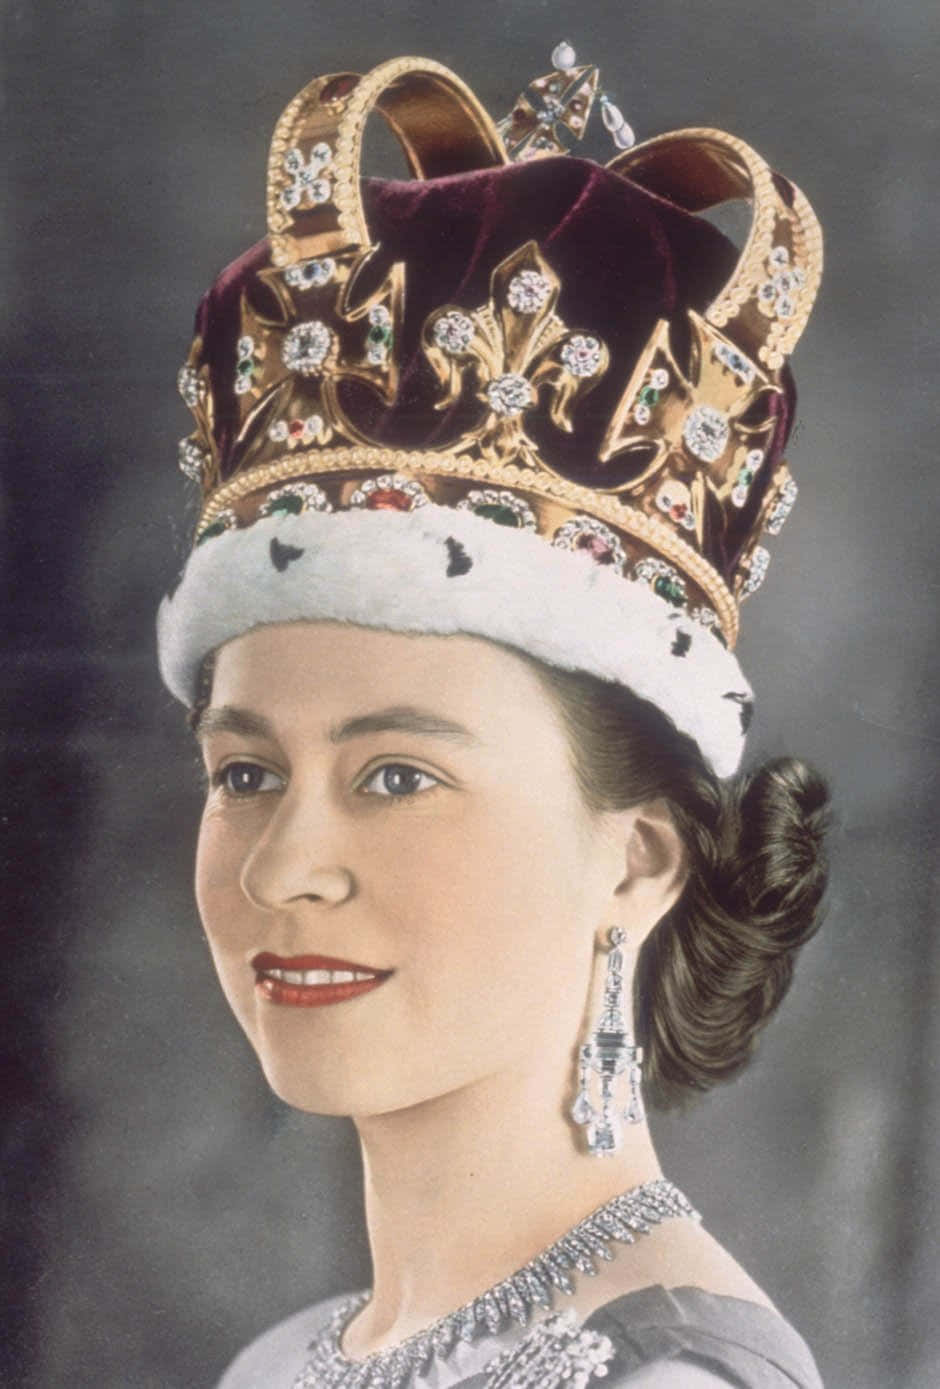 A Portrait of Queen Elizabeth II